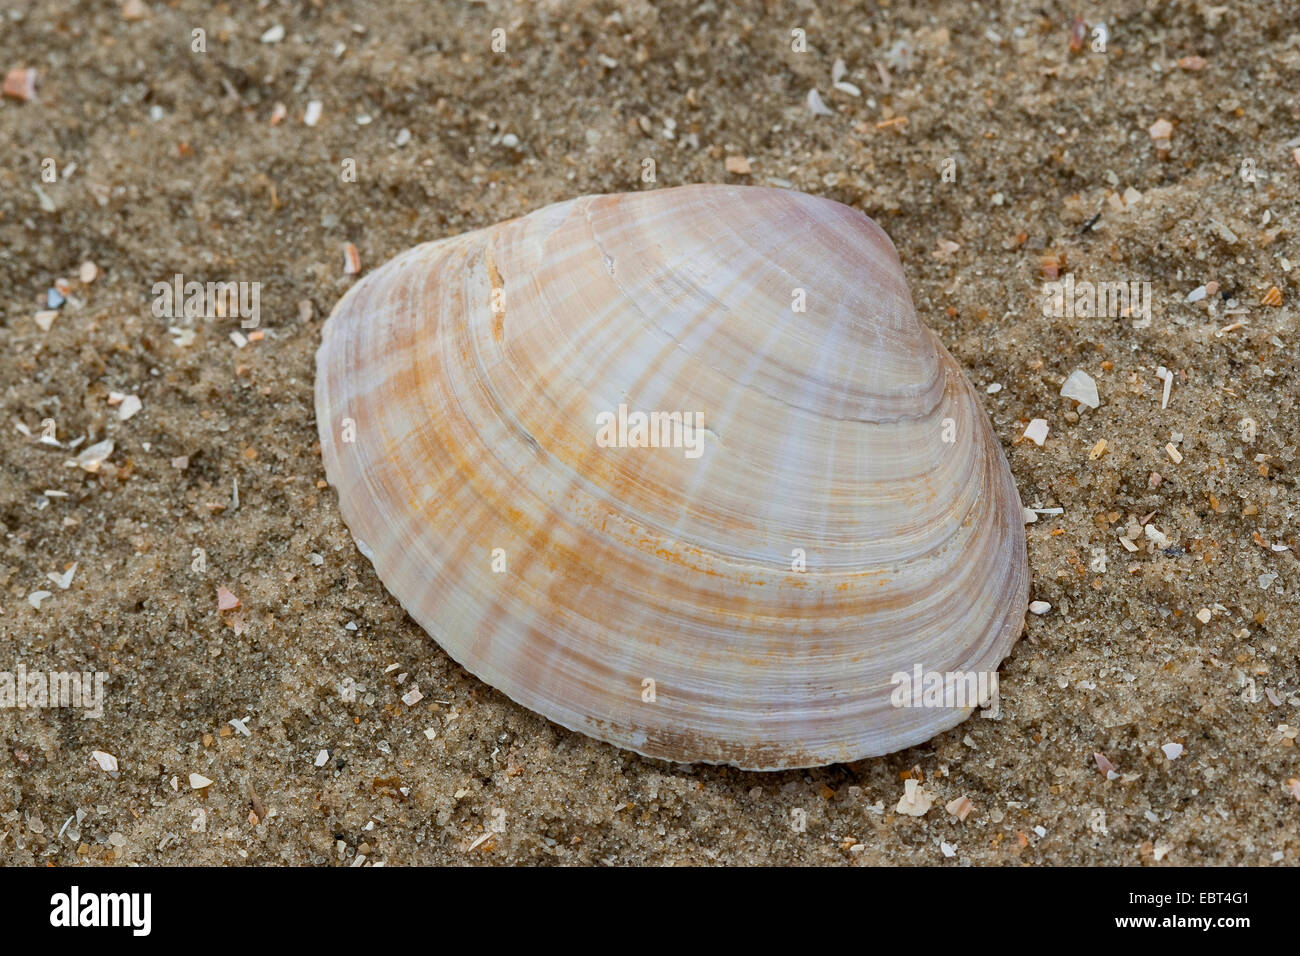 Creux blanc clam shell, creux, villeuse villeuse creux-shell (Mactra corallina, Mactra stultorum, Mactra cinerea), shell sur la plage, Allemagne Banque D'Images